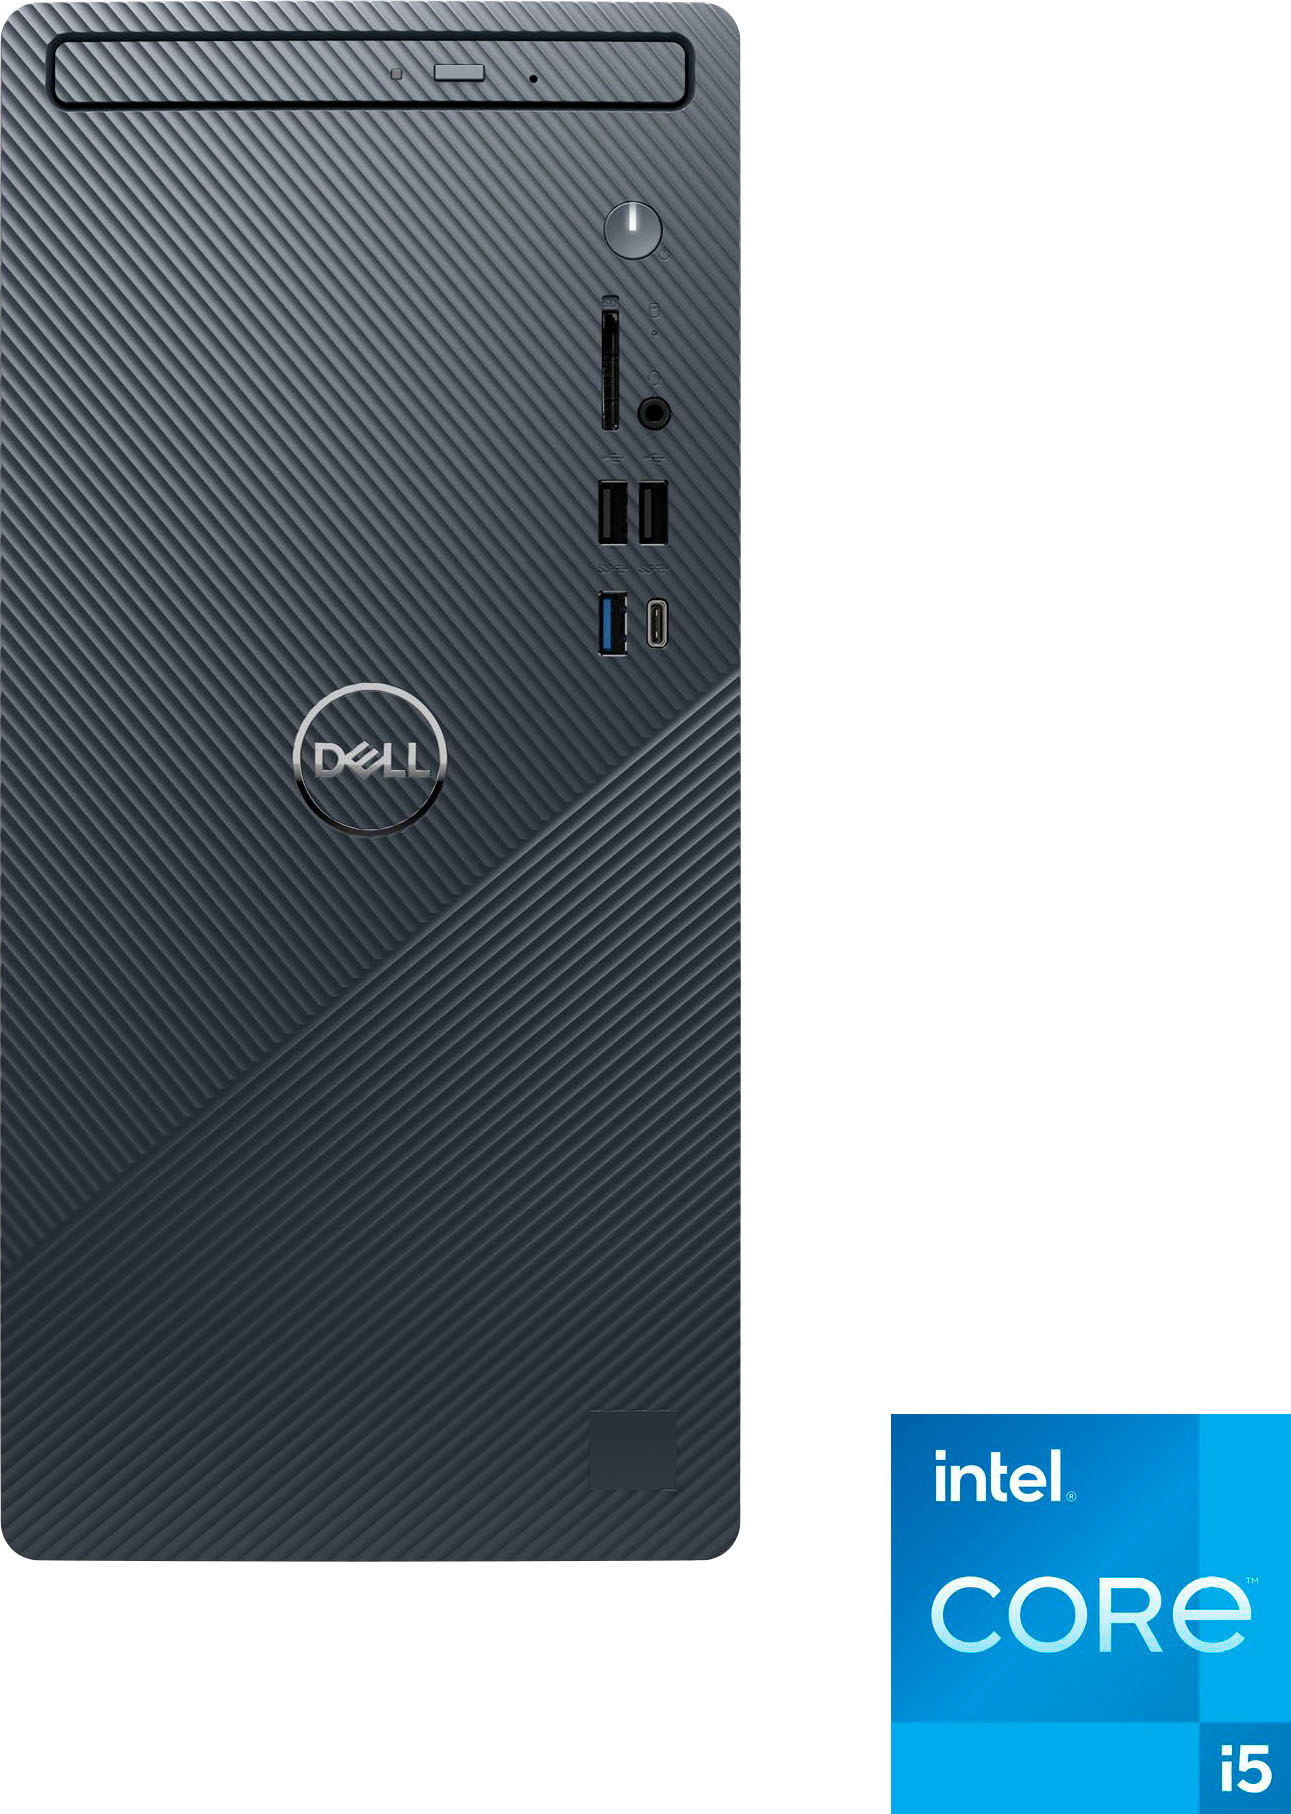 PC Portable Dell 17.0 Intel Core i5 8 Go RAM 512 Go SSD Gris - PC Portable